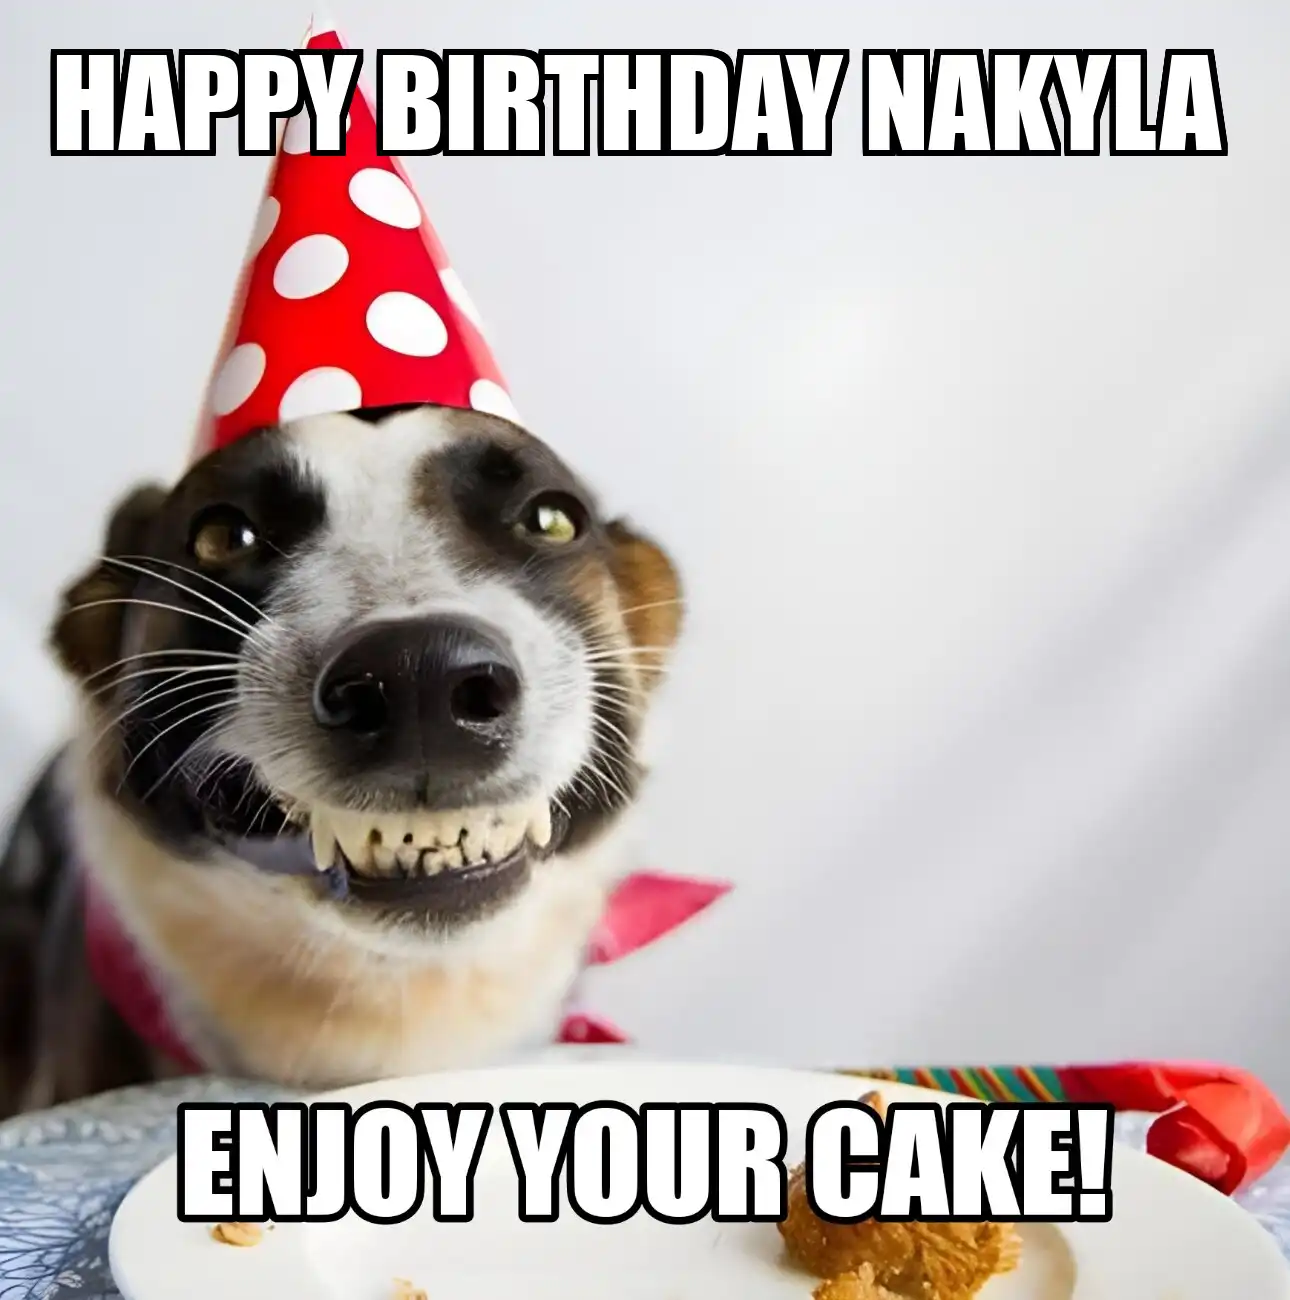 Happy Birthday Nakyla Enjoy Your Cake Dog Meme